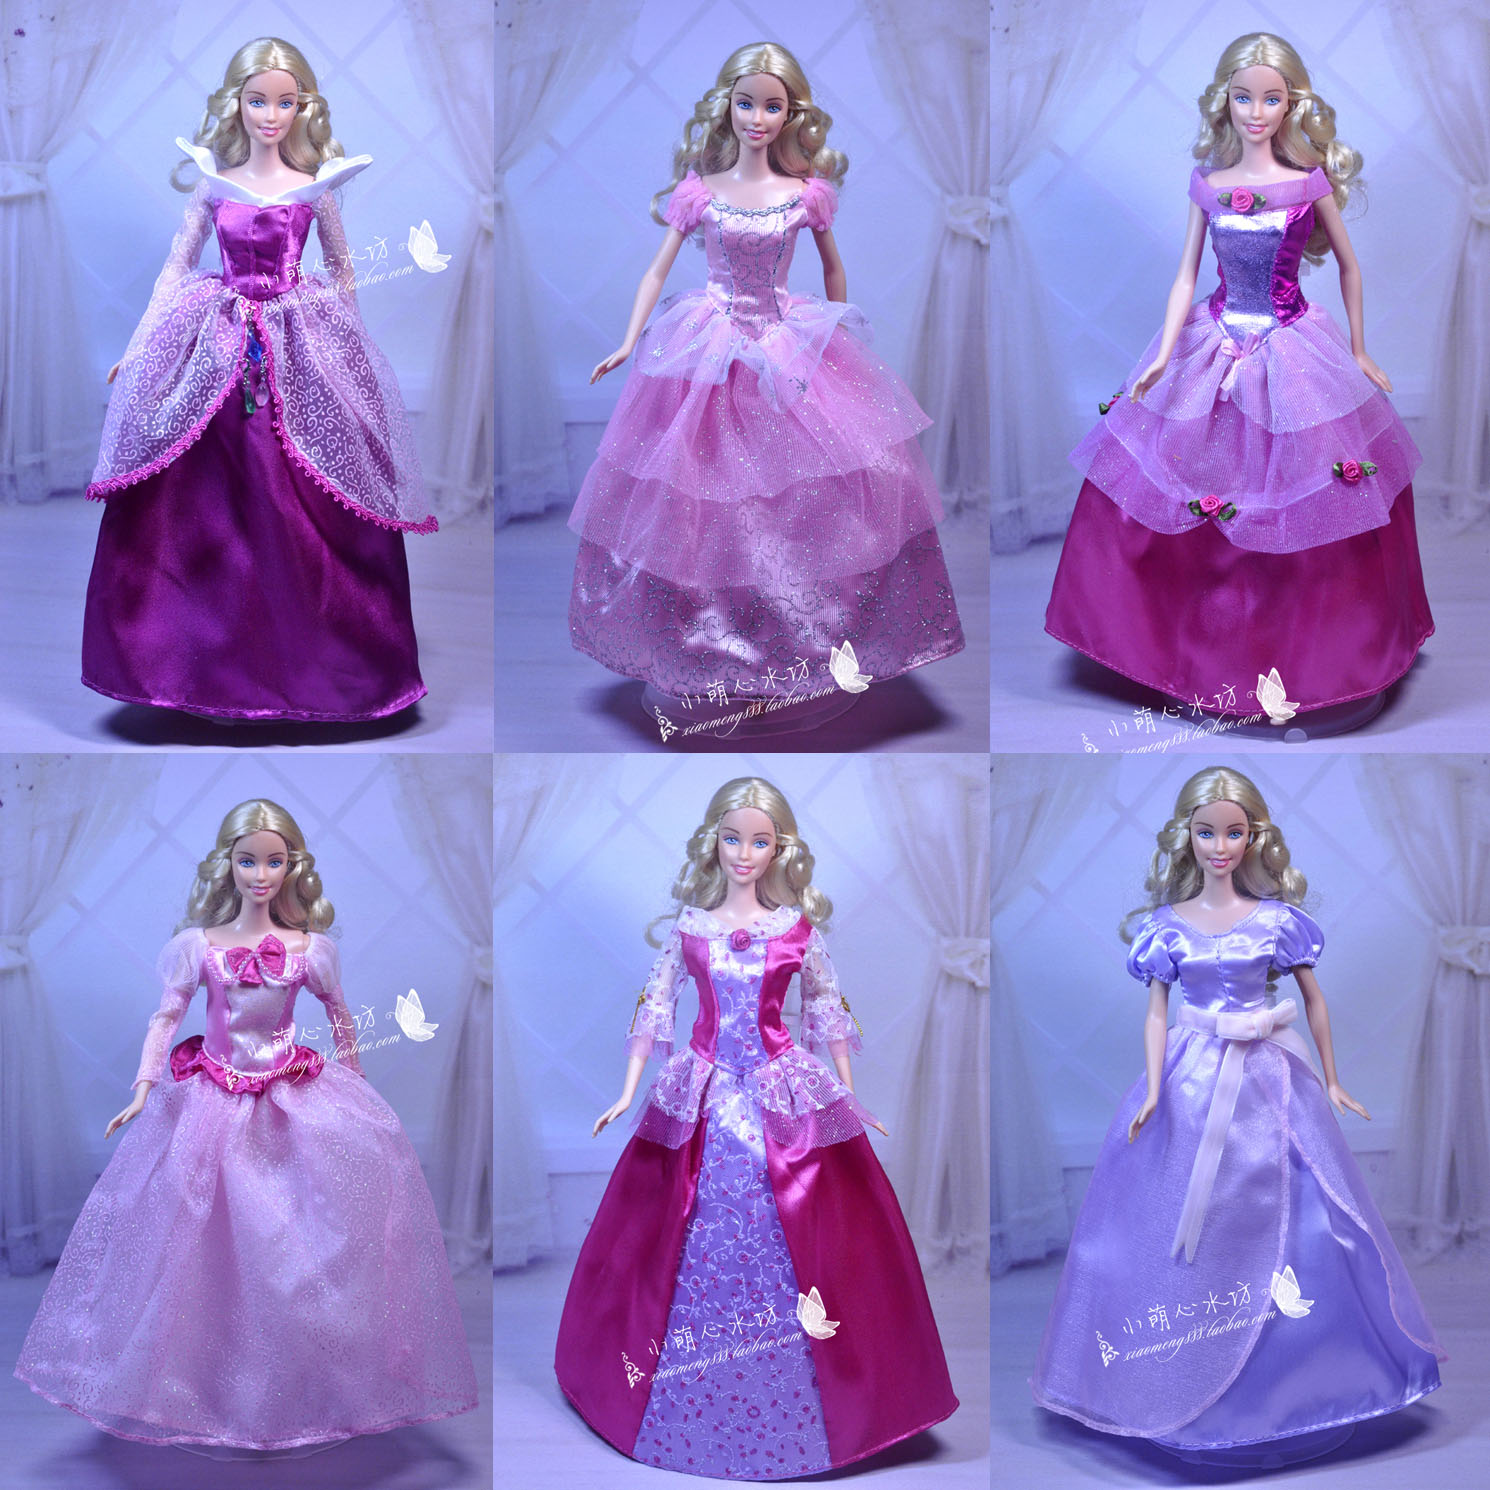 正版芭芘娃衣迪士尼皇室公主裙粉紫系列换装心怡娃娃女孩生日礼物